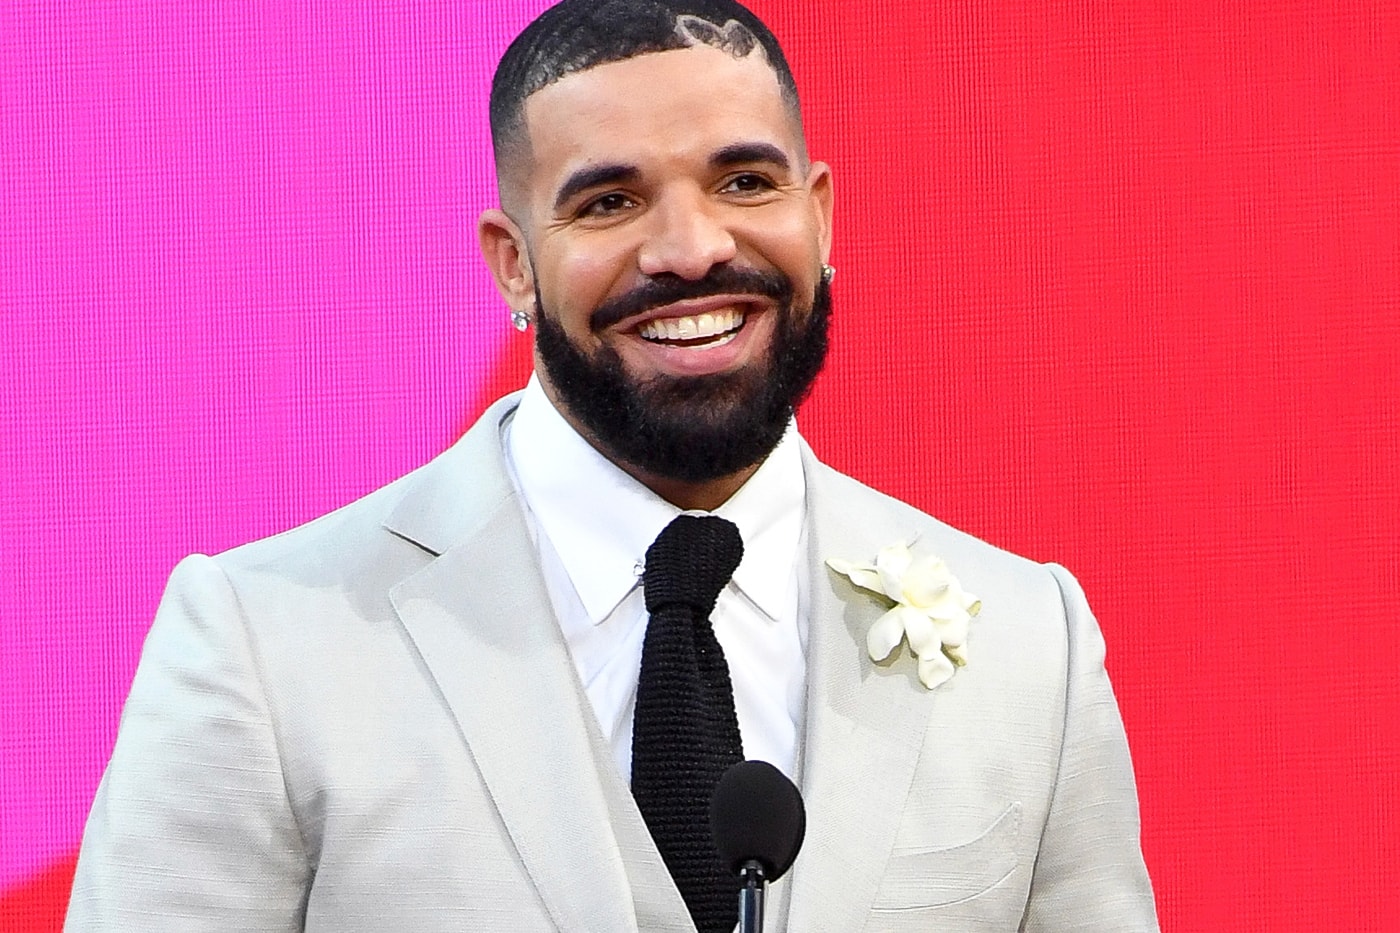 ドレイクが『サーティファイド・ラヴァー・ボーイ』の内容を密かにアップデートした模様 Drake Certified Lover Boy Song Updates IMY2 Knife Talk You Only Live Twice 21 Savage Project Pat Kid Cudi New Verse